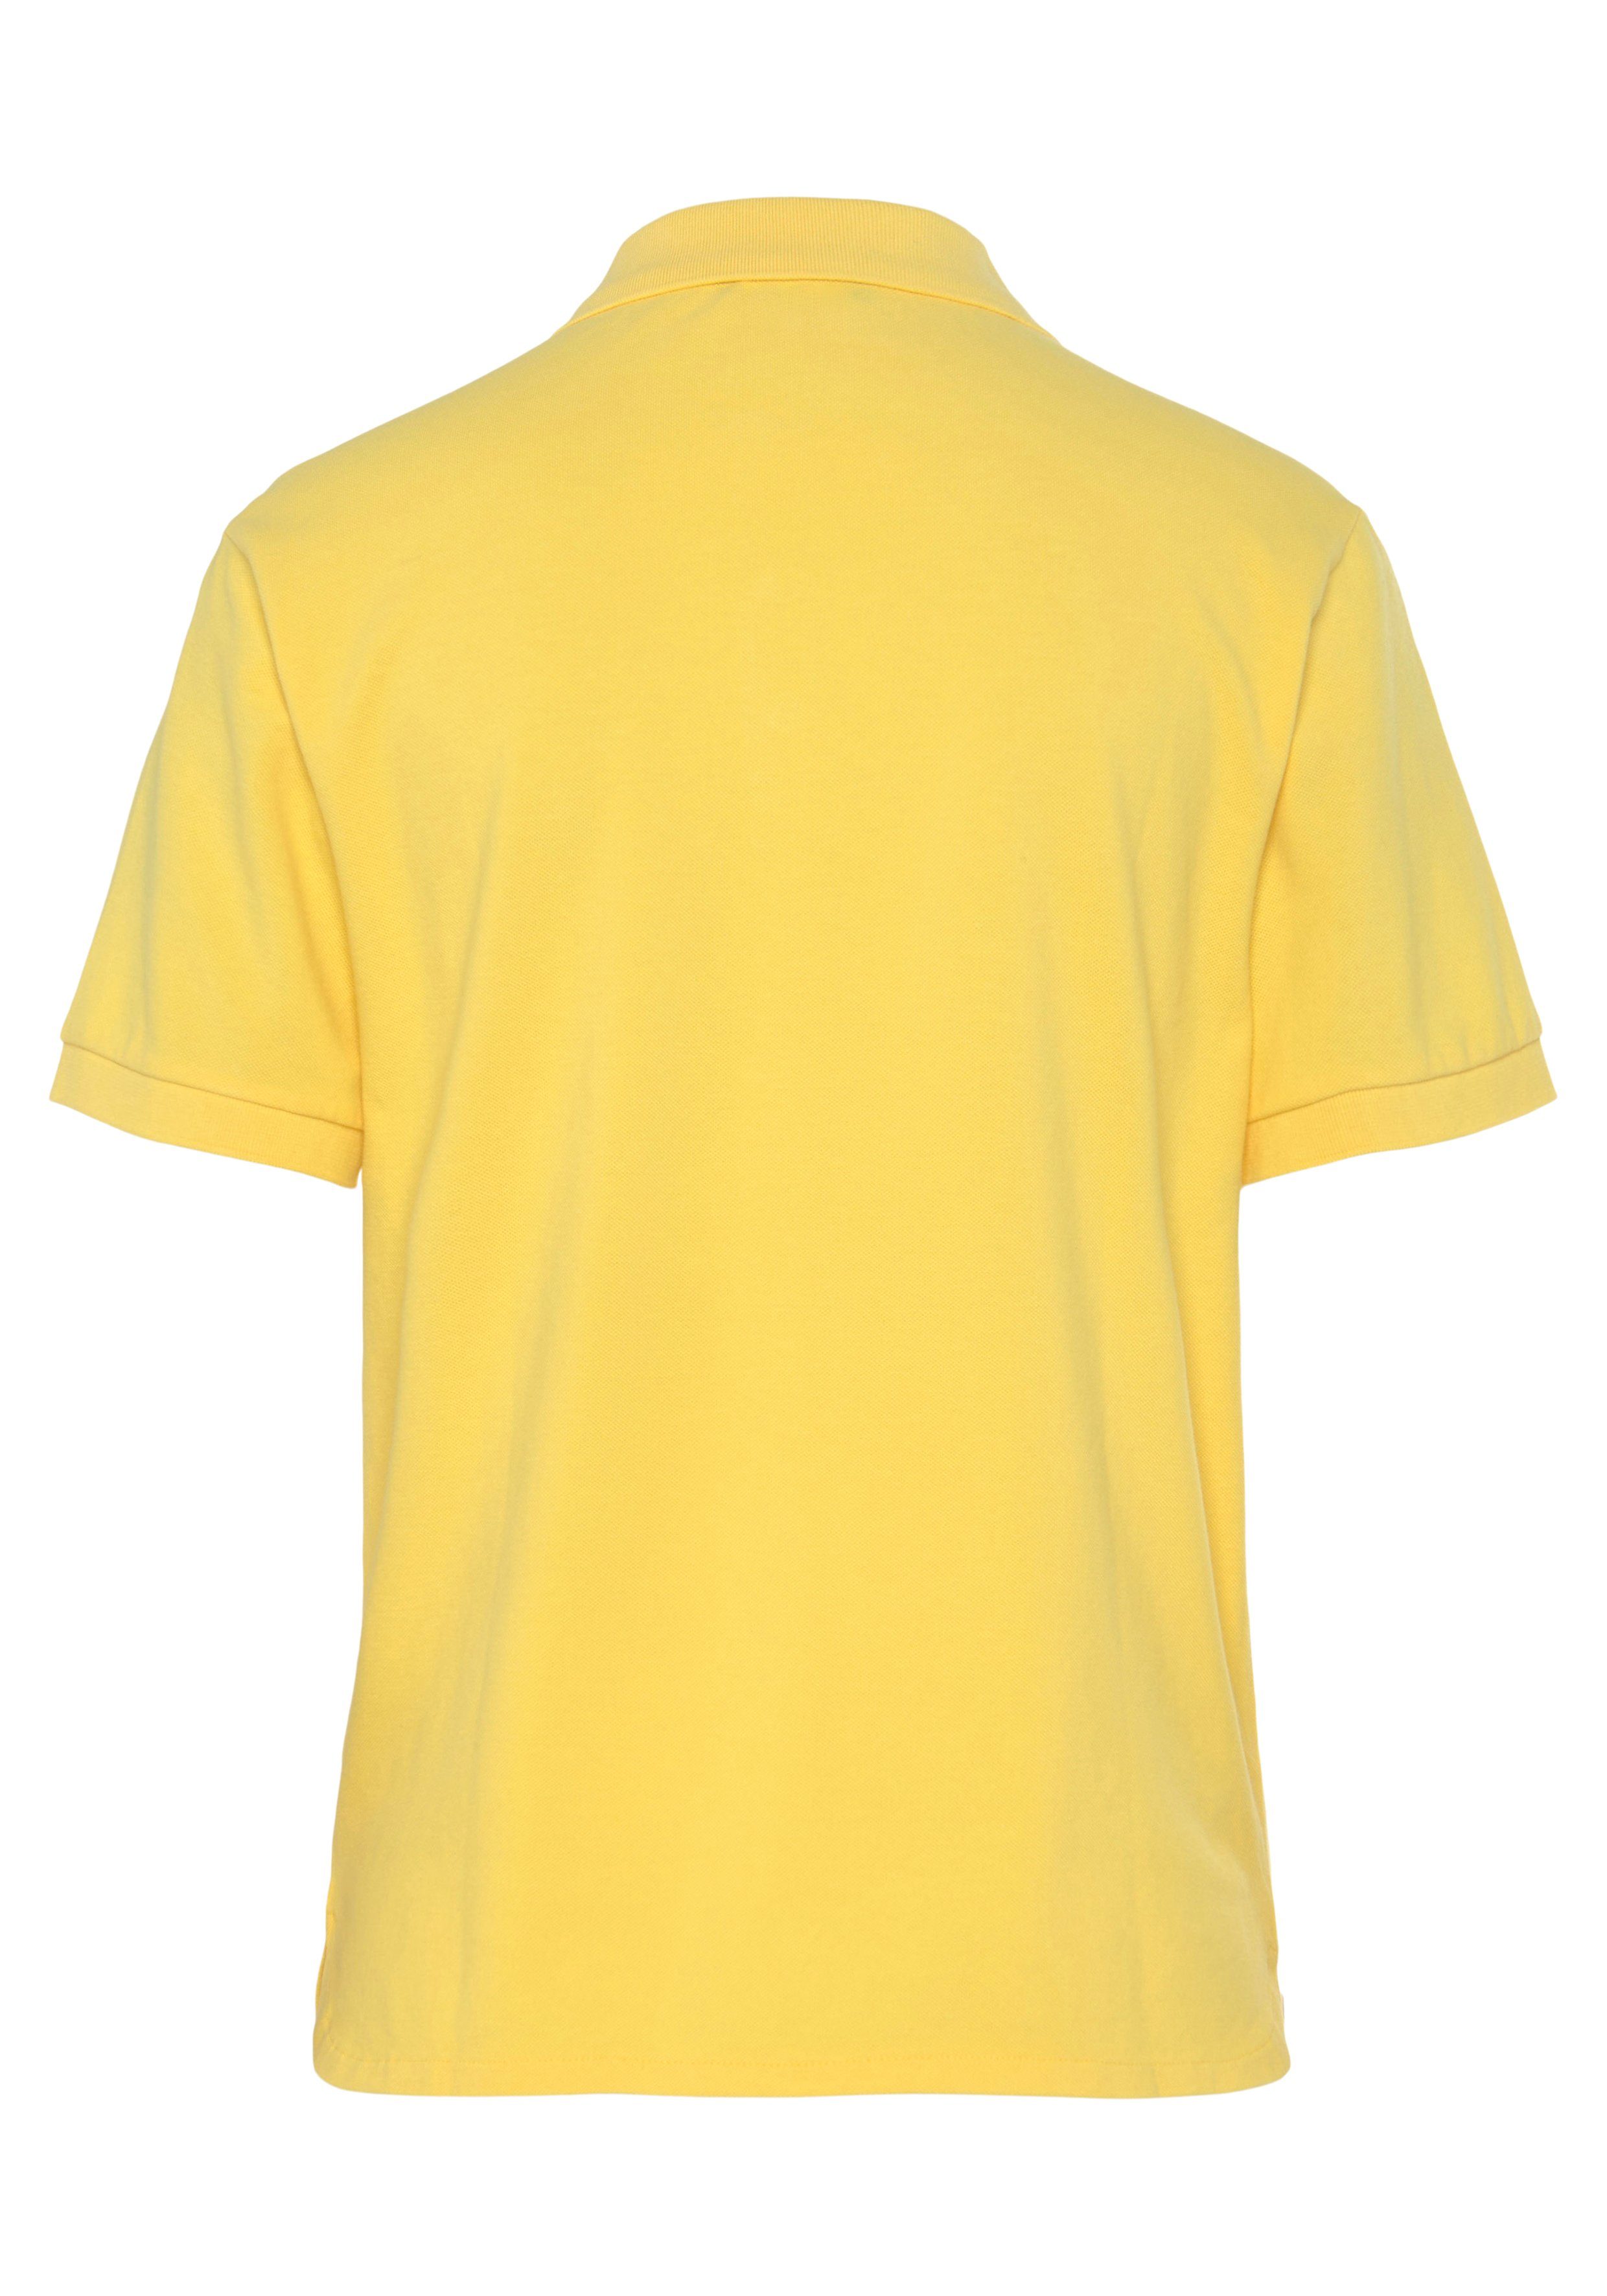 perlmuttfarbenen Benetton of Poloshirt gelb United Colors mit Knöpfen